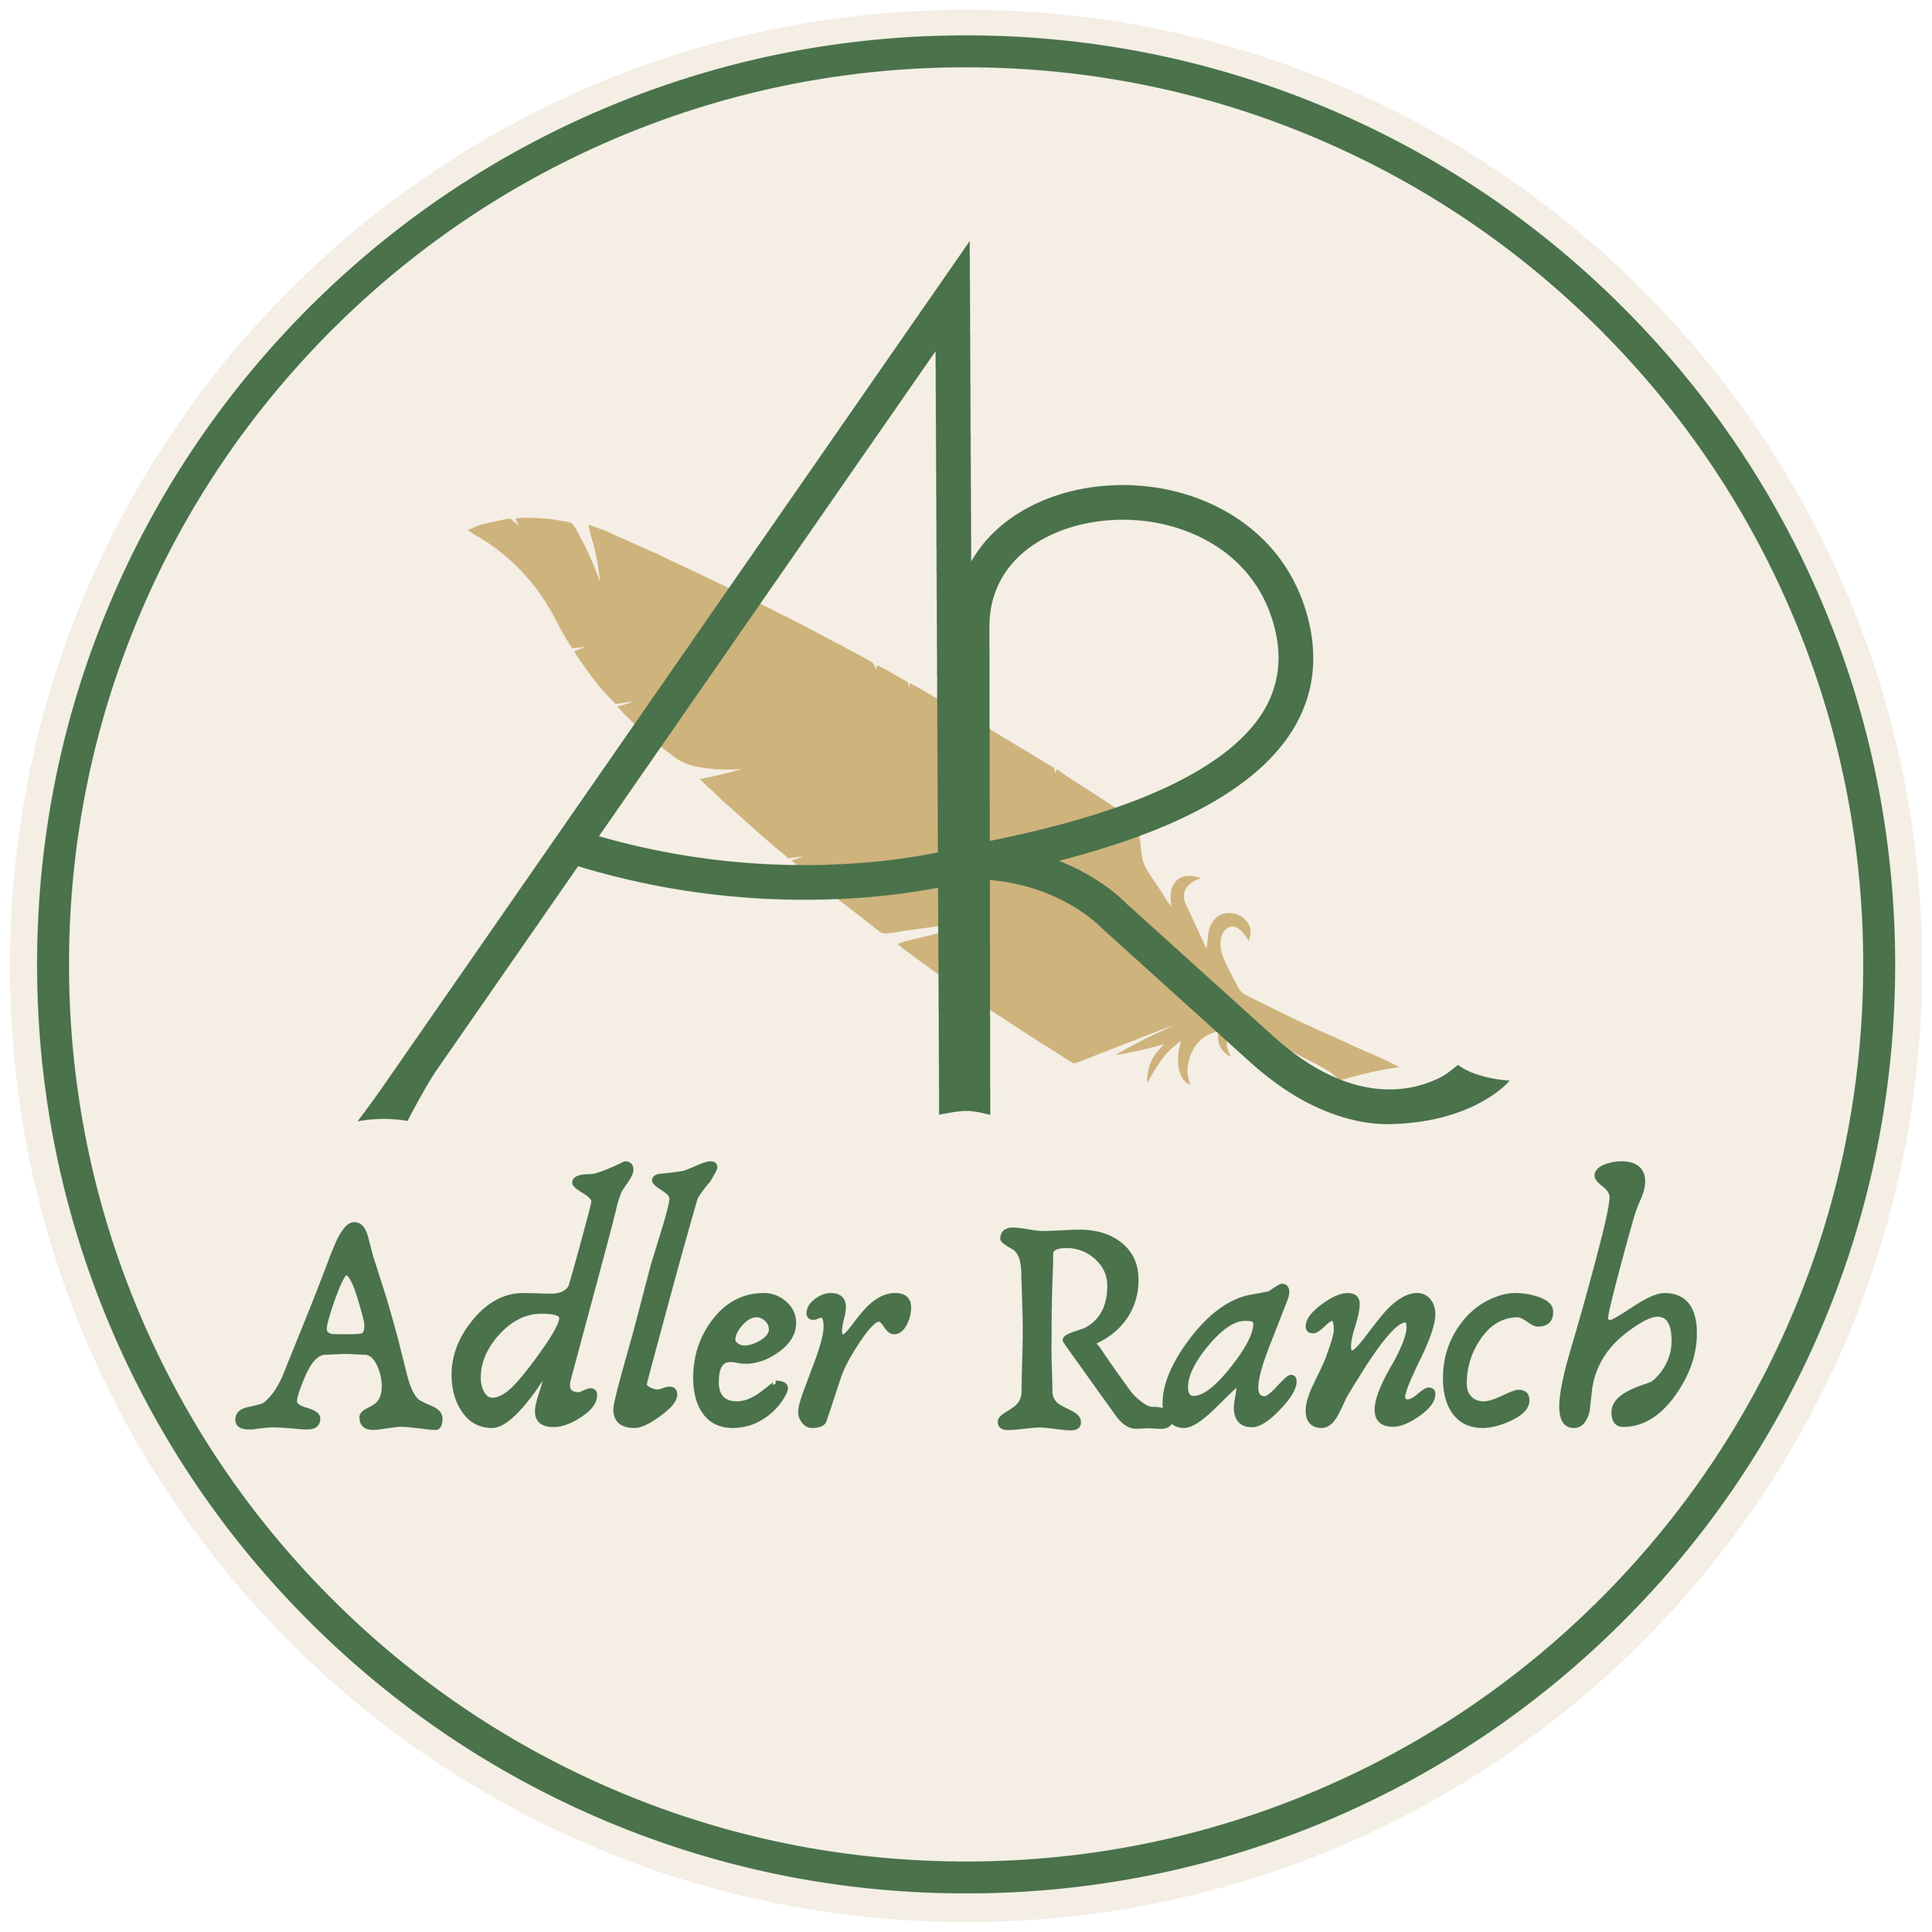 Adler Ranch